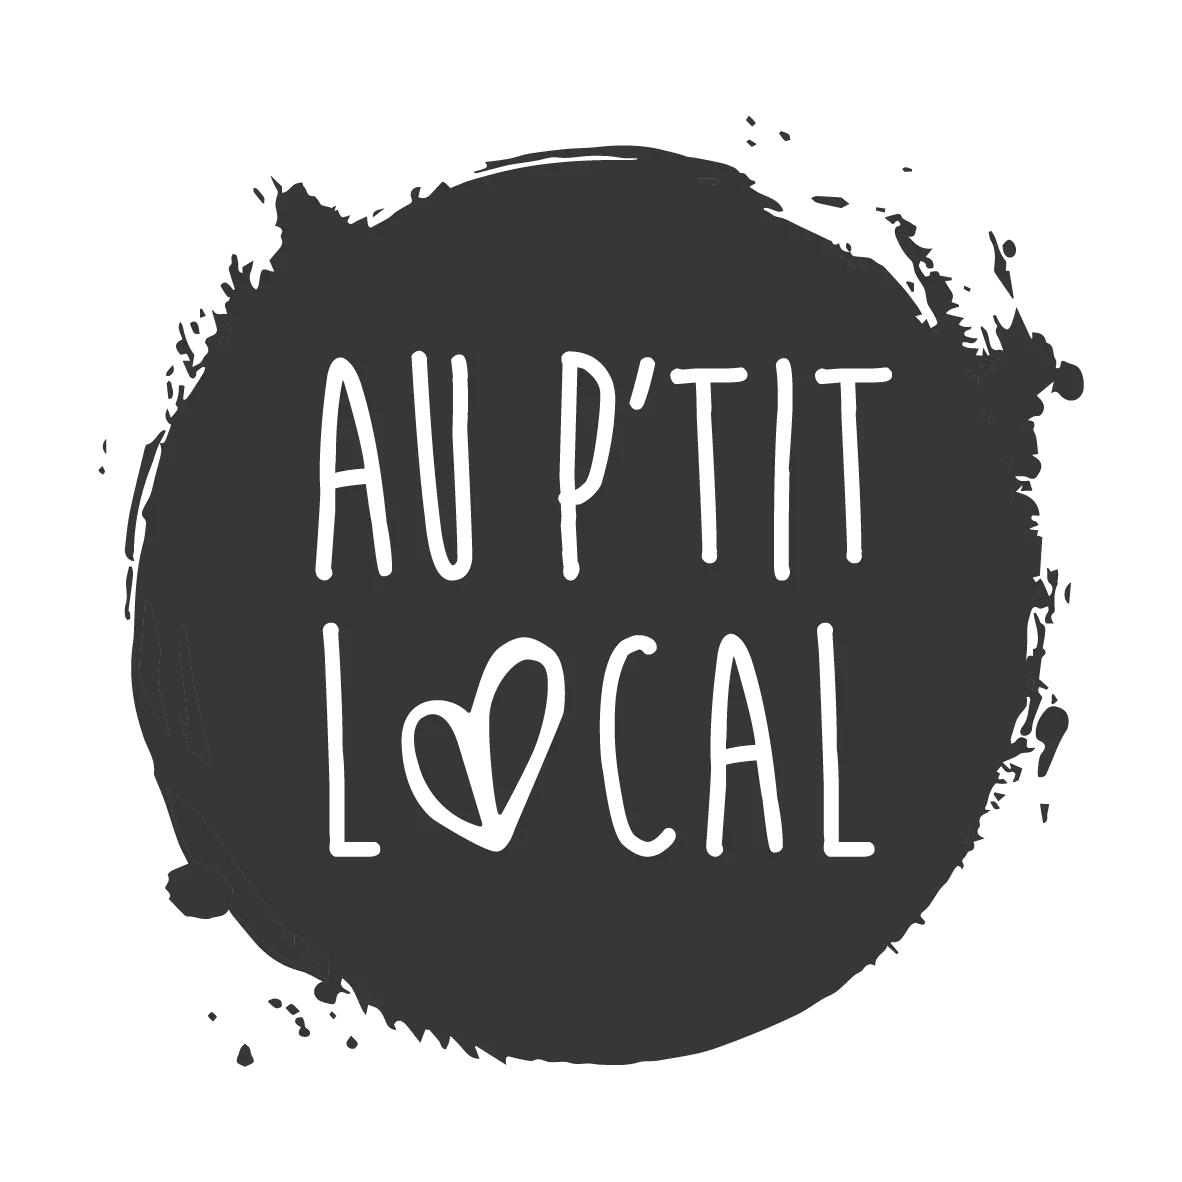 AUptitLOCAL-logo_anthracite